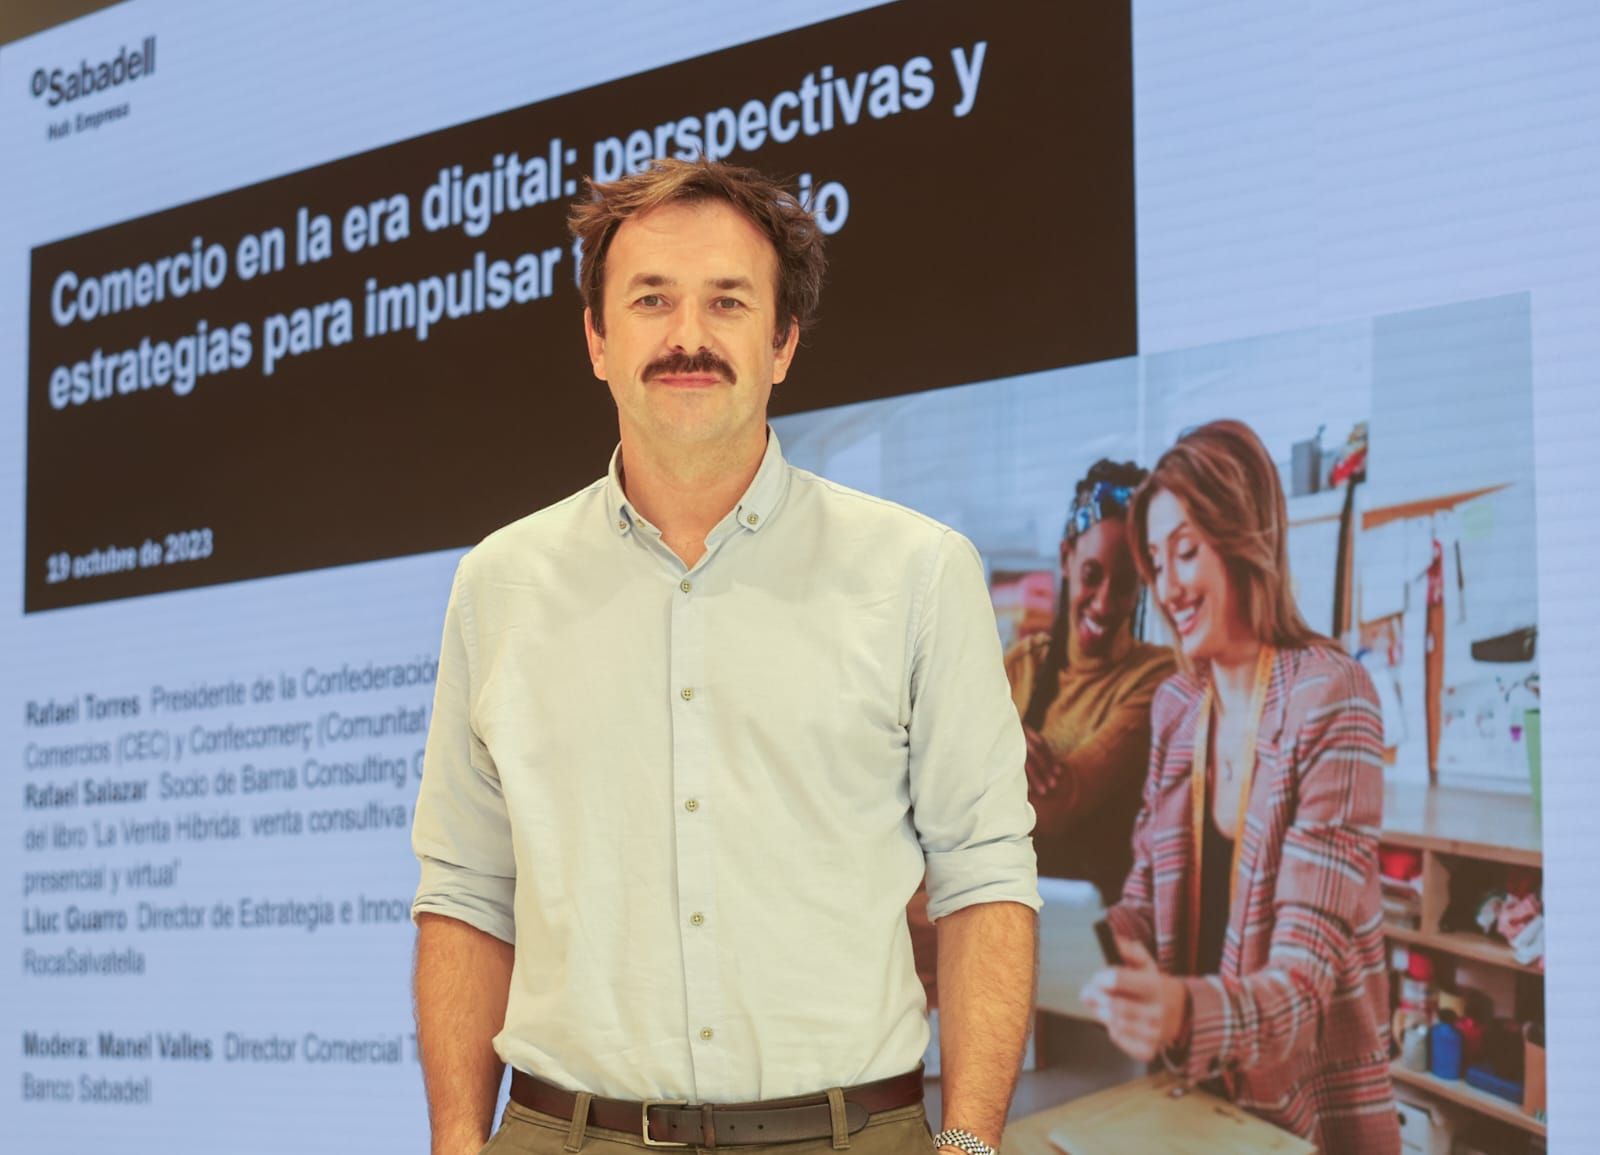 Mesa redonda del Sabadell: "Comercio en la era digital: perspectivas y estrategias para impulsar tu negocio"